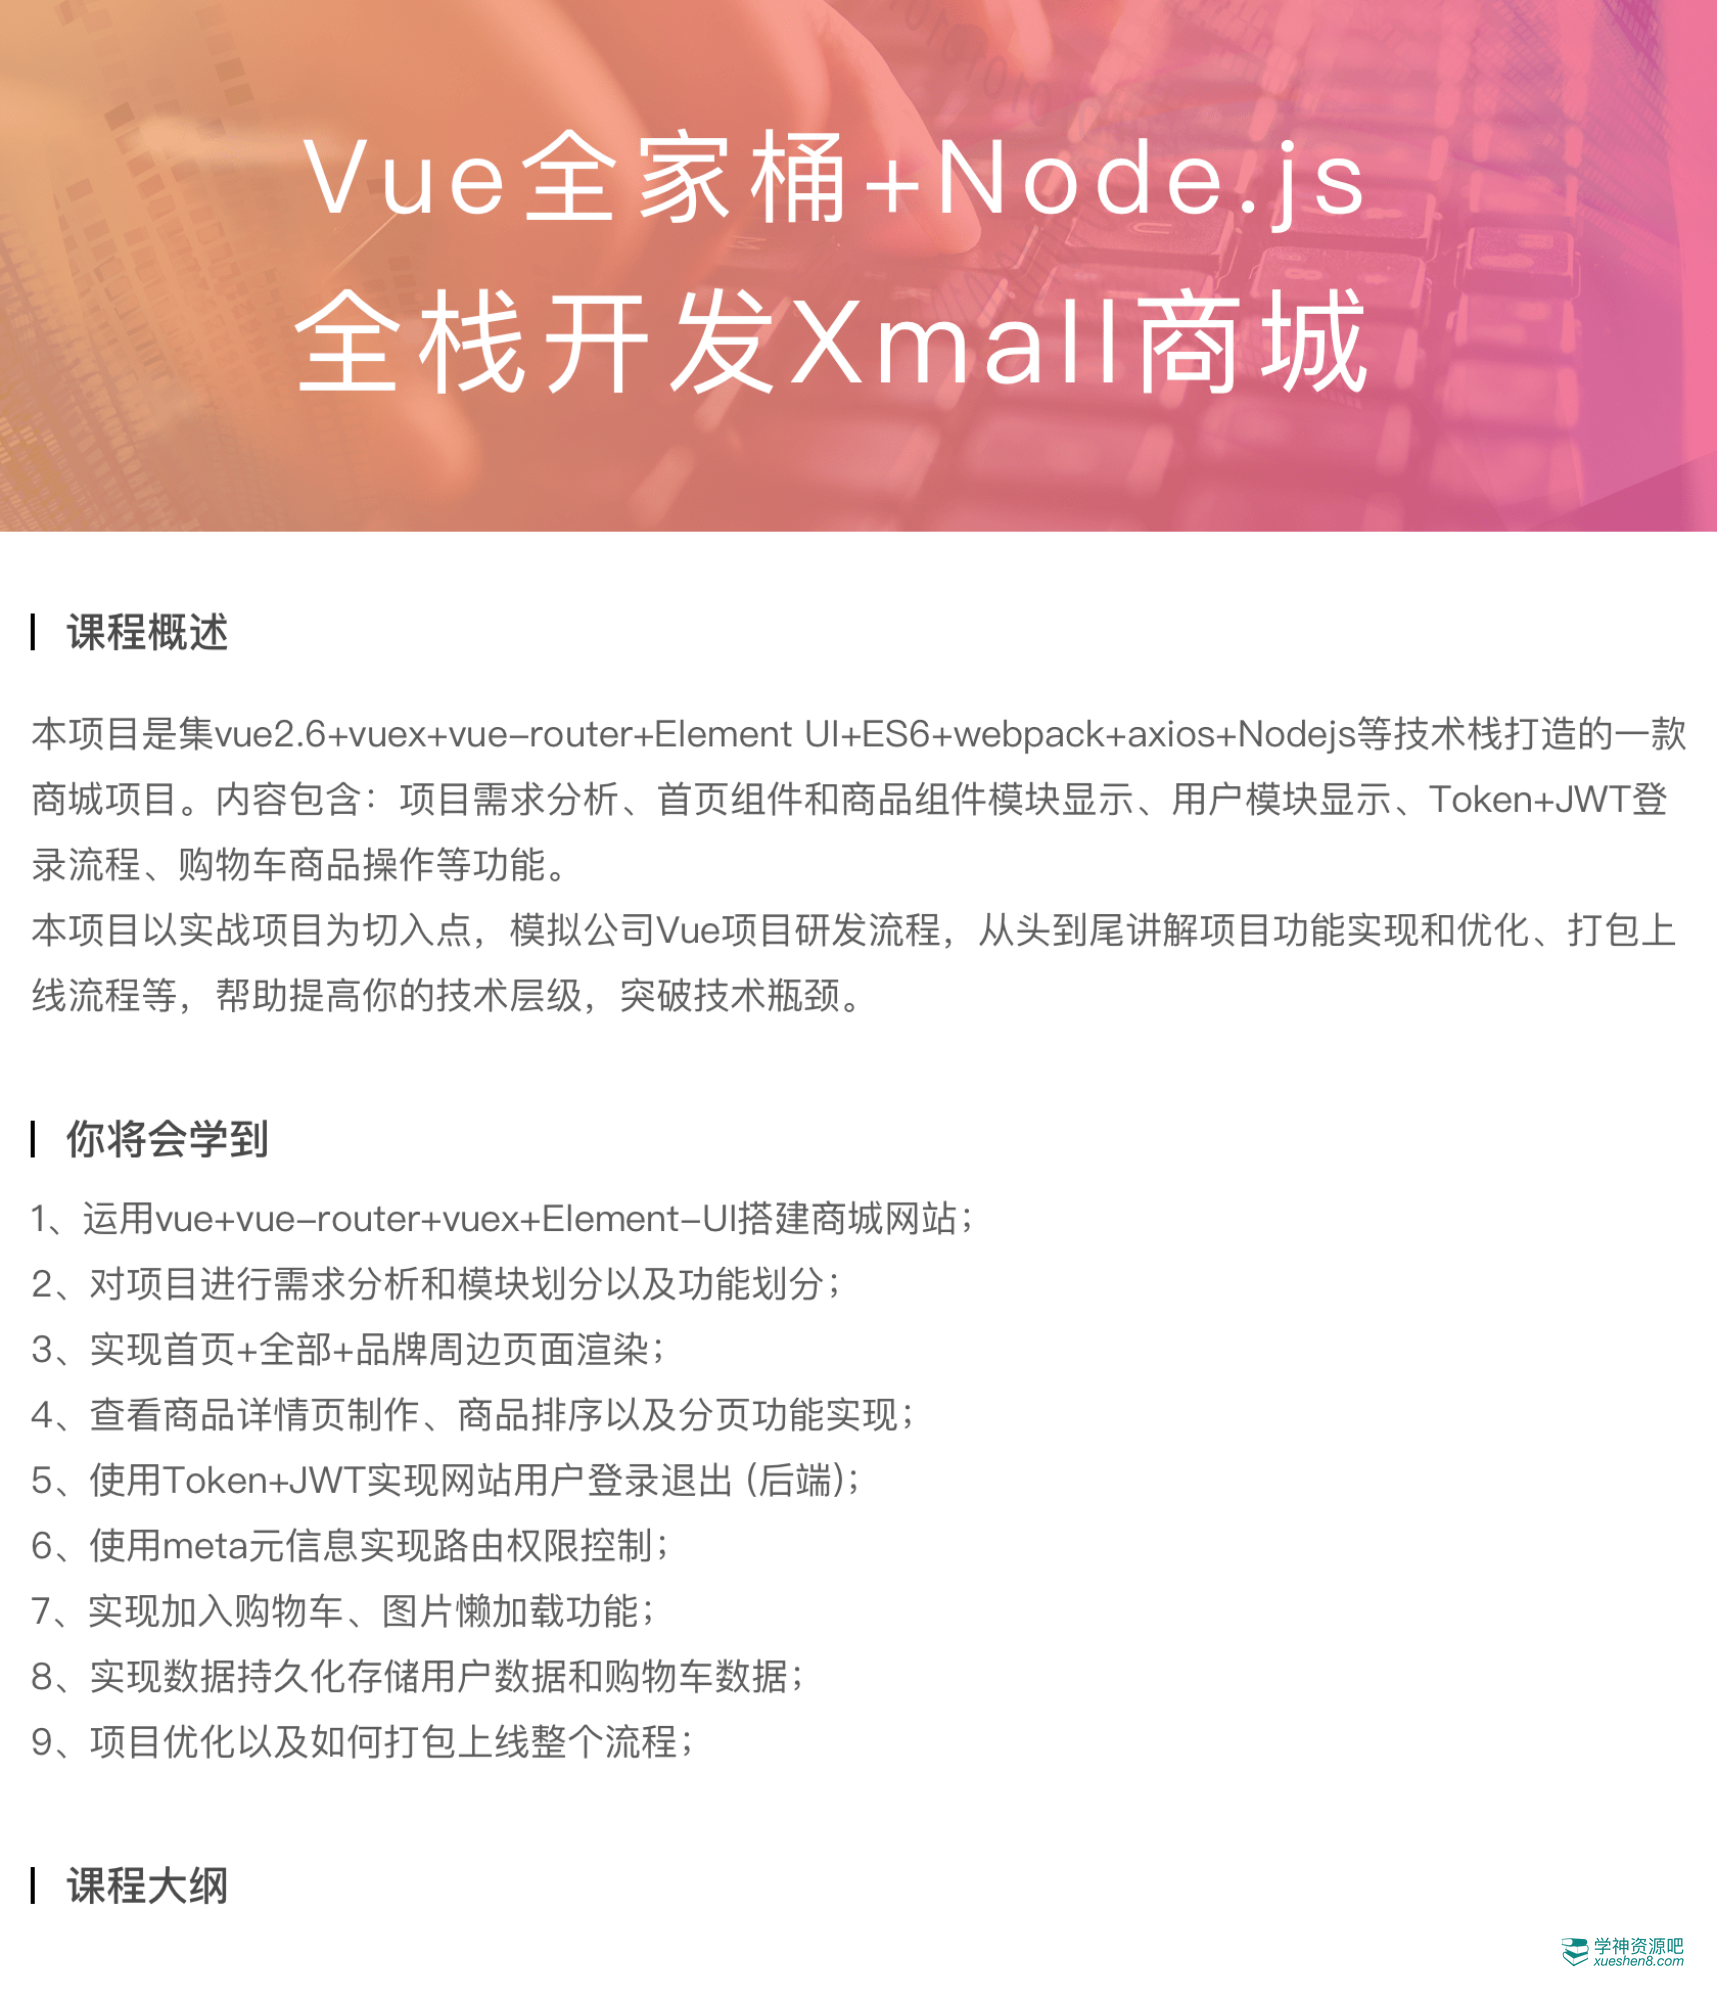 Vue全家桶+Node.js全栈开发Xmall商城视频教程